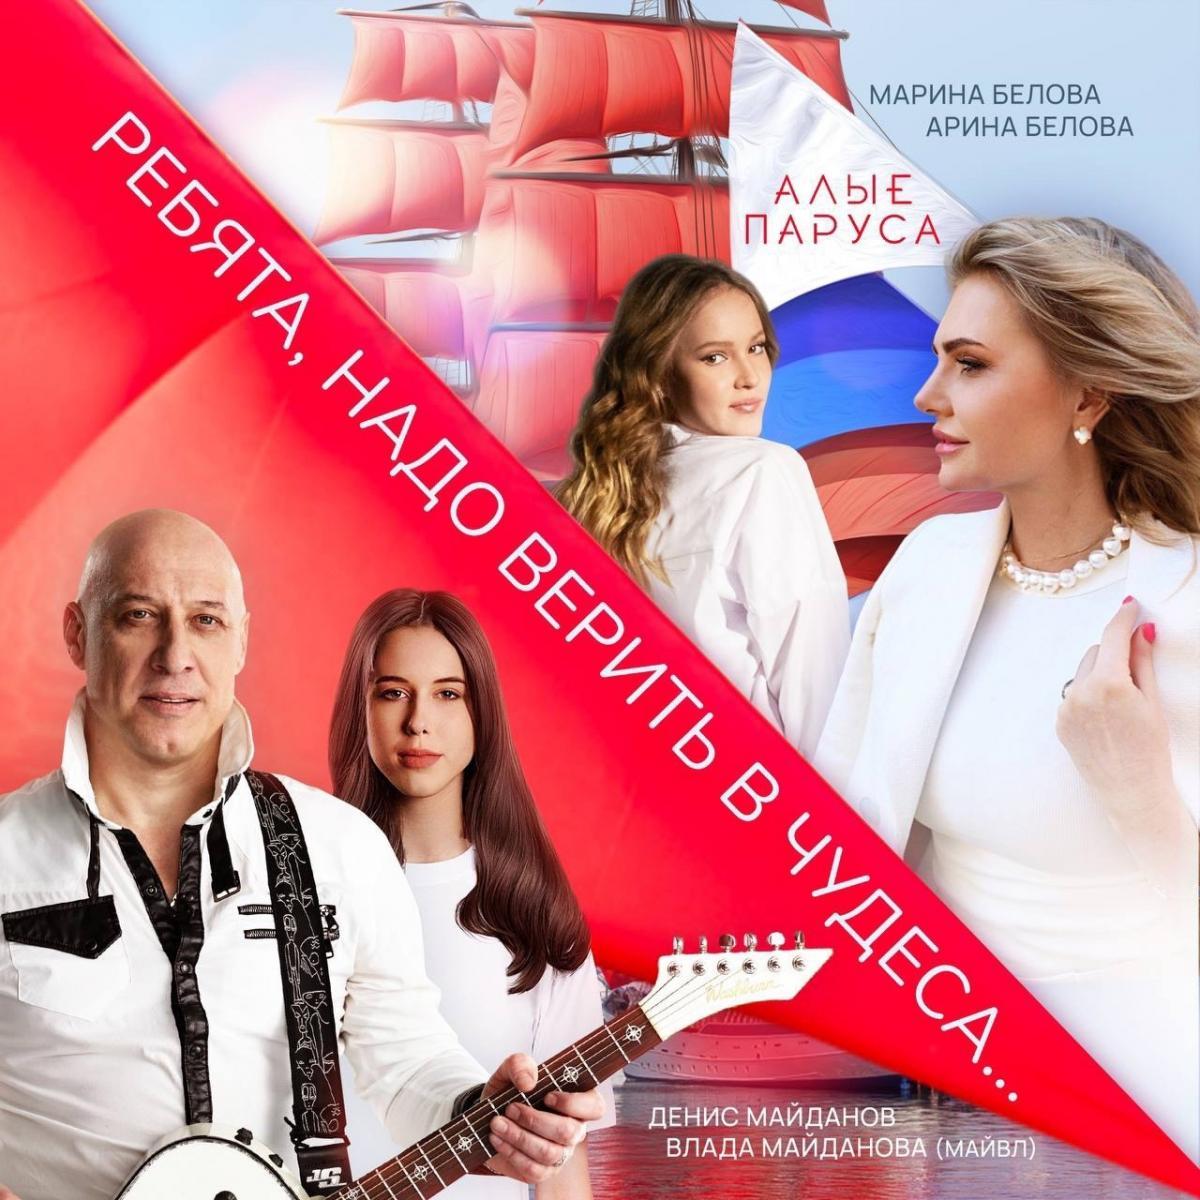 Песня «Алые паруса» получила новую жизнь в исполнении Дениса и Влады Майдановых, а также Марины Беловой и её дочери Арины